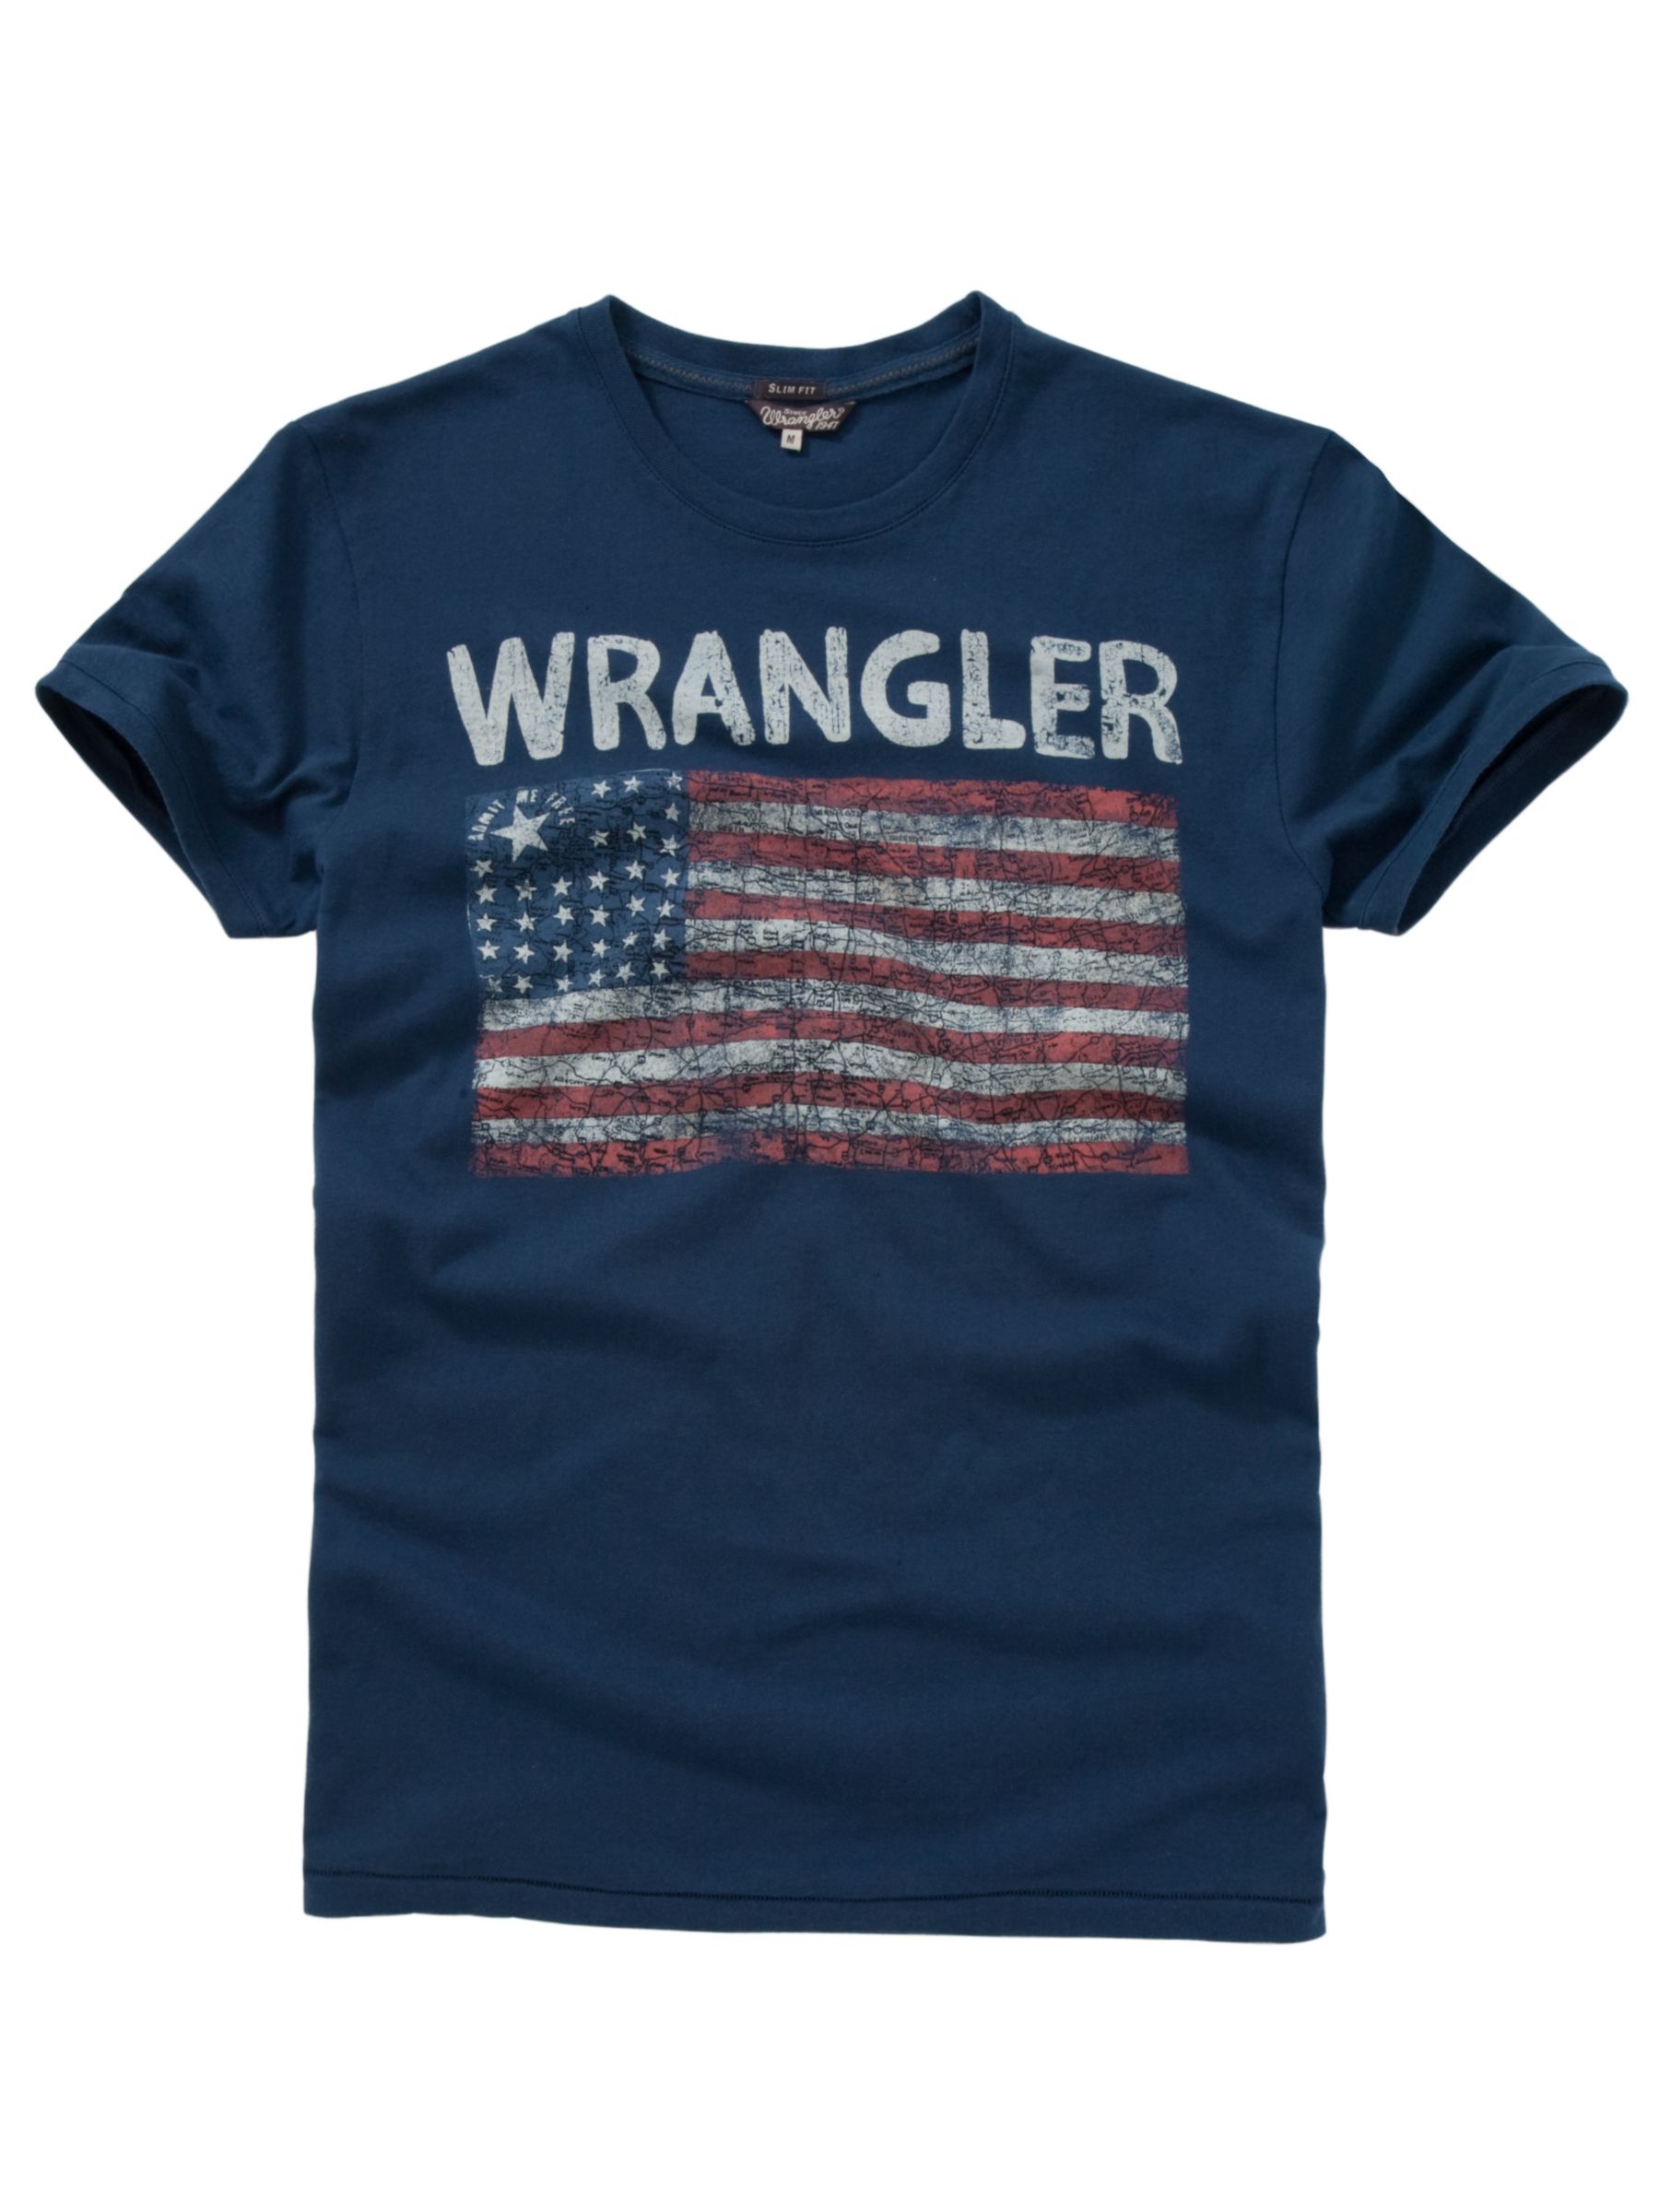 Wrangler Logo Flag T-Shirt, Navy